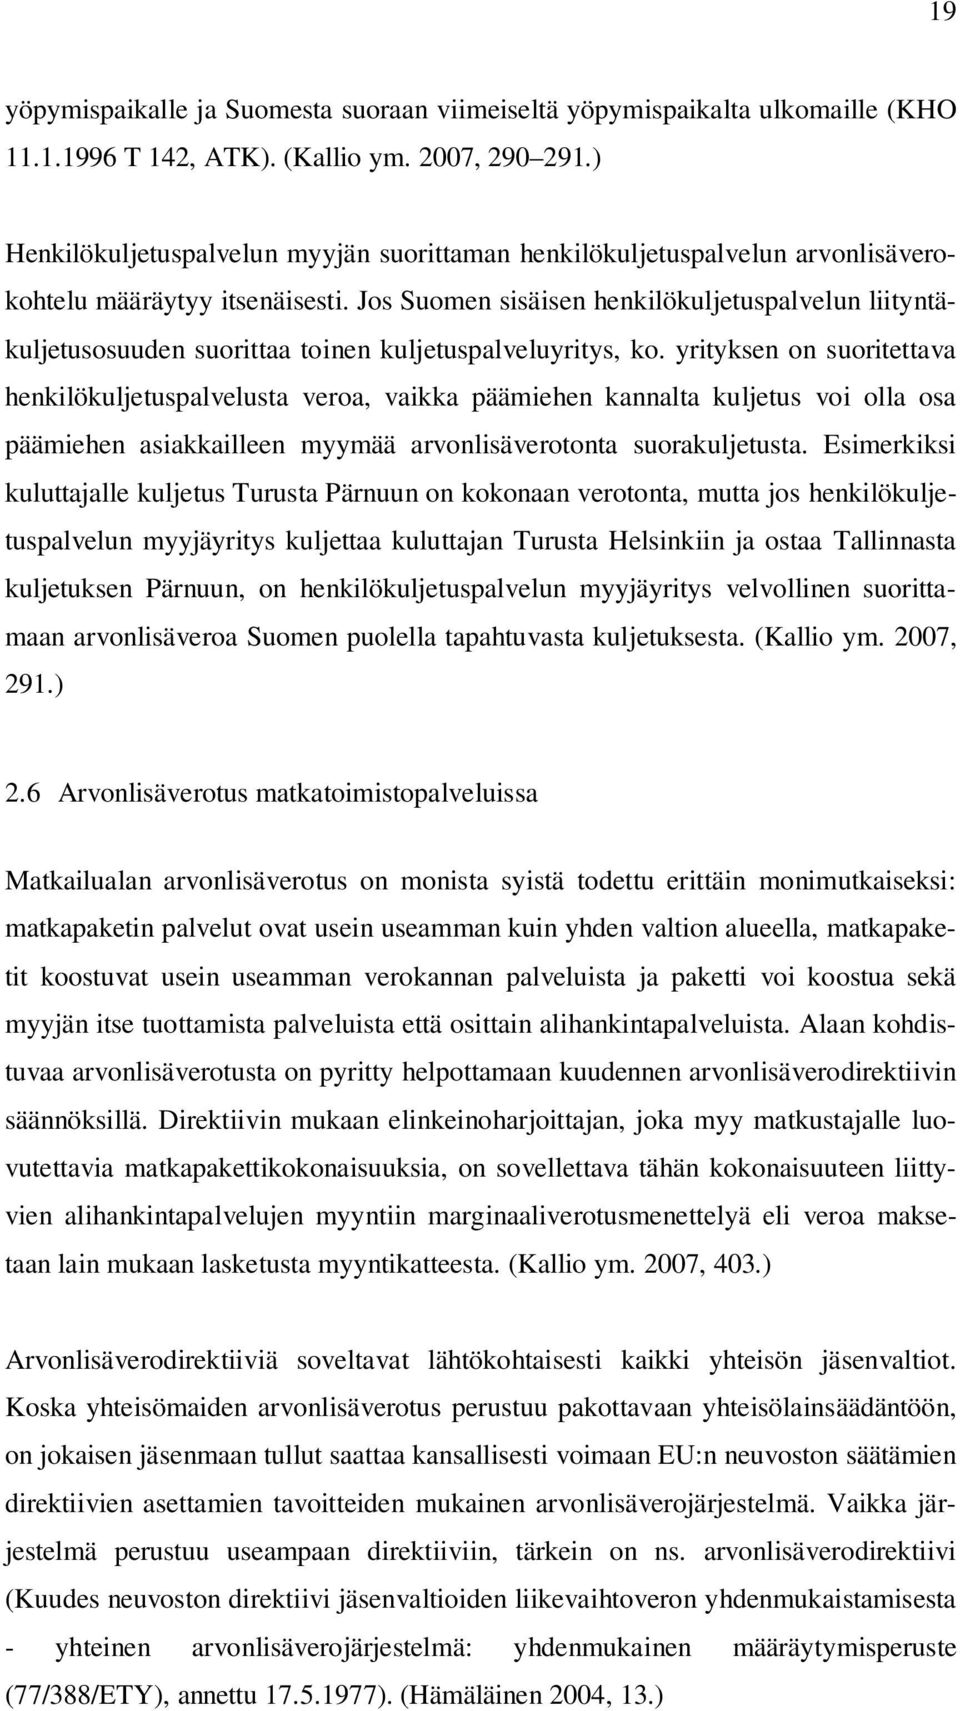 Jos Suomen sisäisen henkilökuljetuspalvelun liityntäkuljetusosuuden suorittaa toinen kuljetuspalveluyritys, ko.